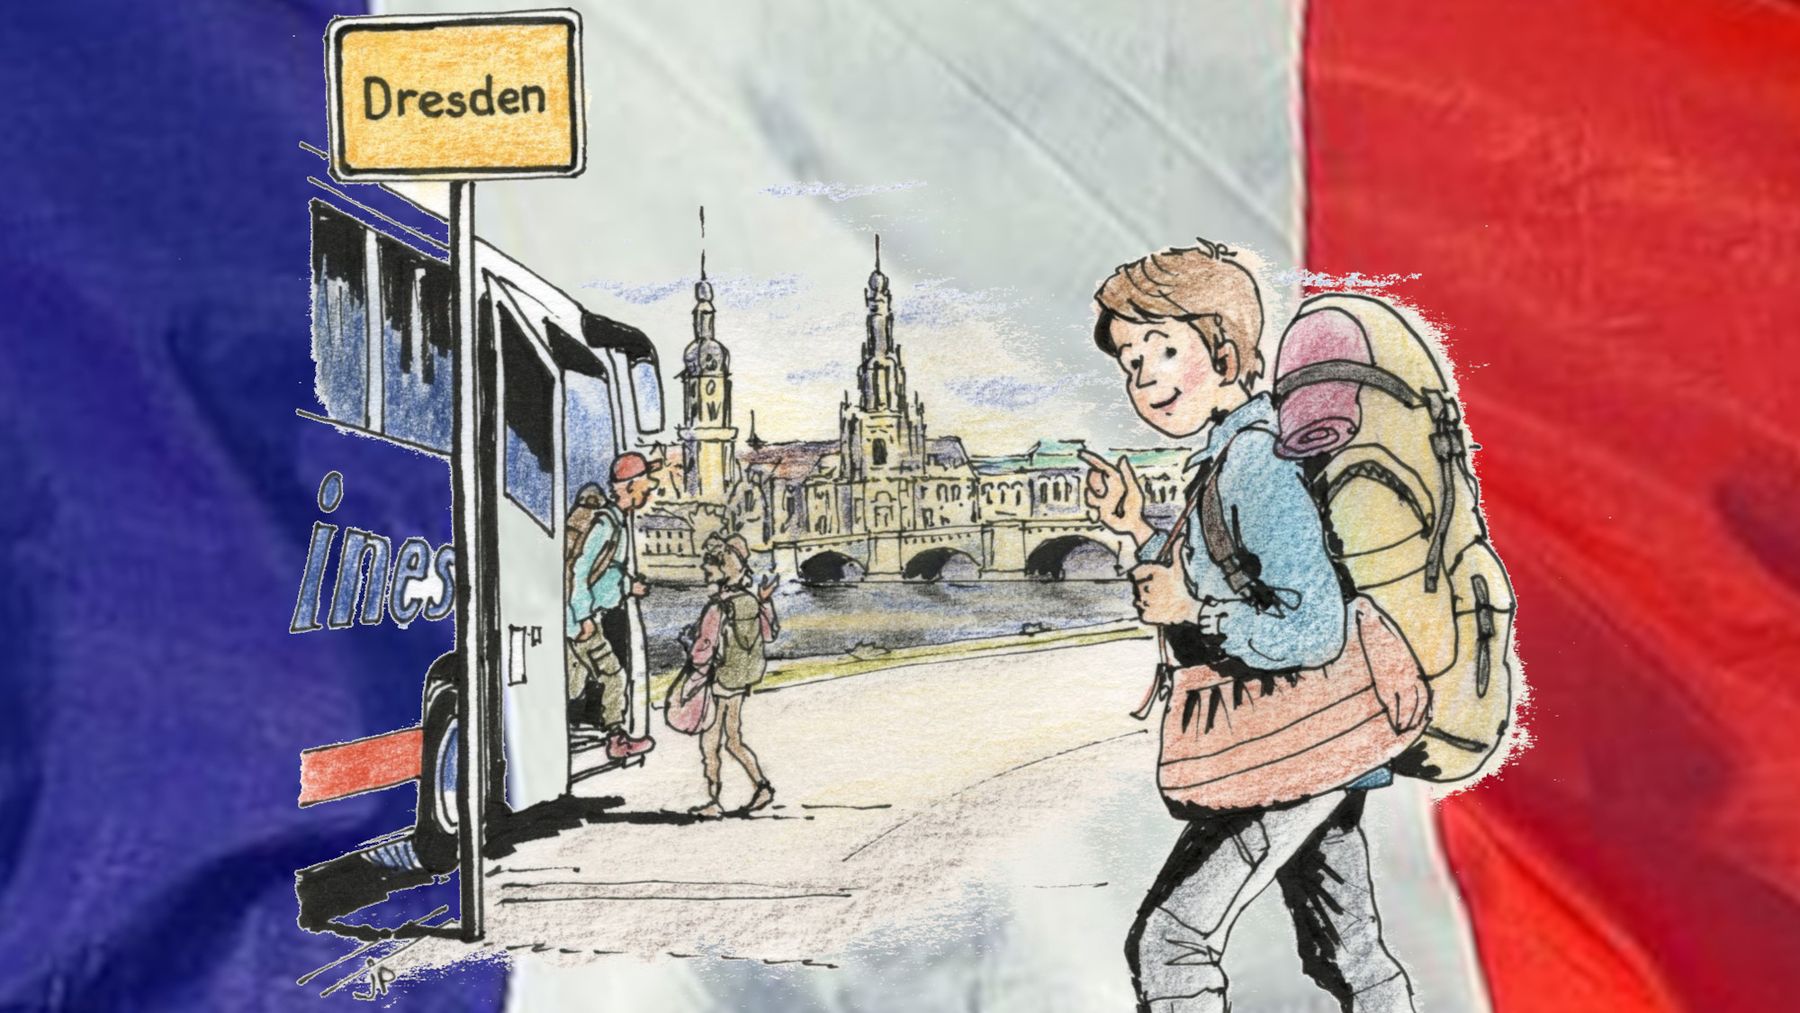 Die Französin Peps in Dresden - Zeichnung: Jean-Pierre Deruelles